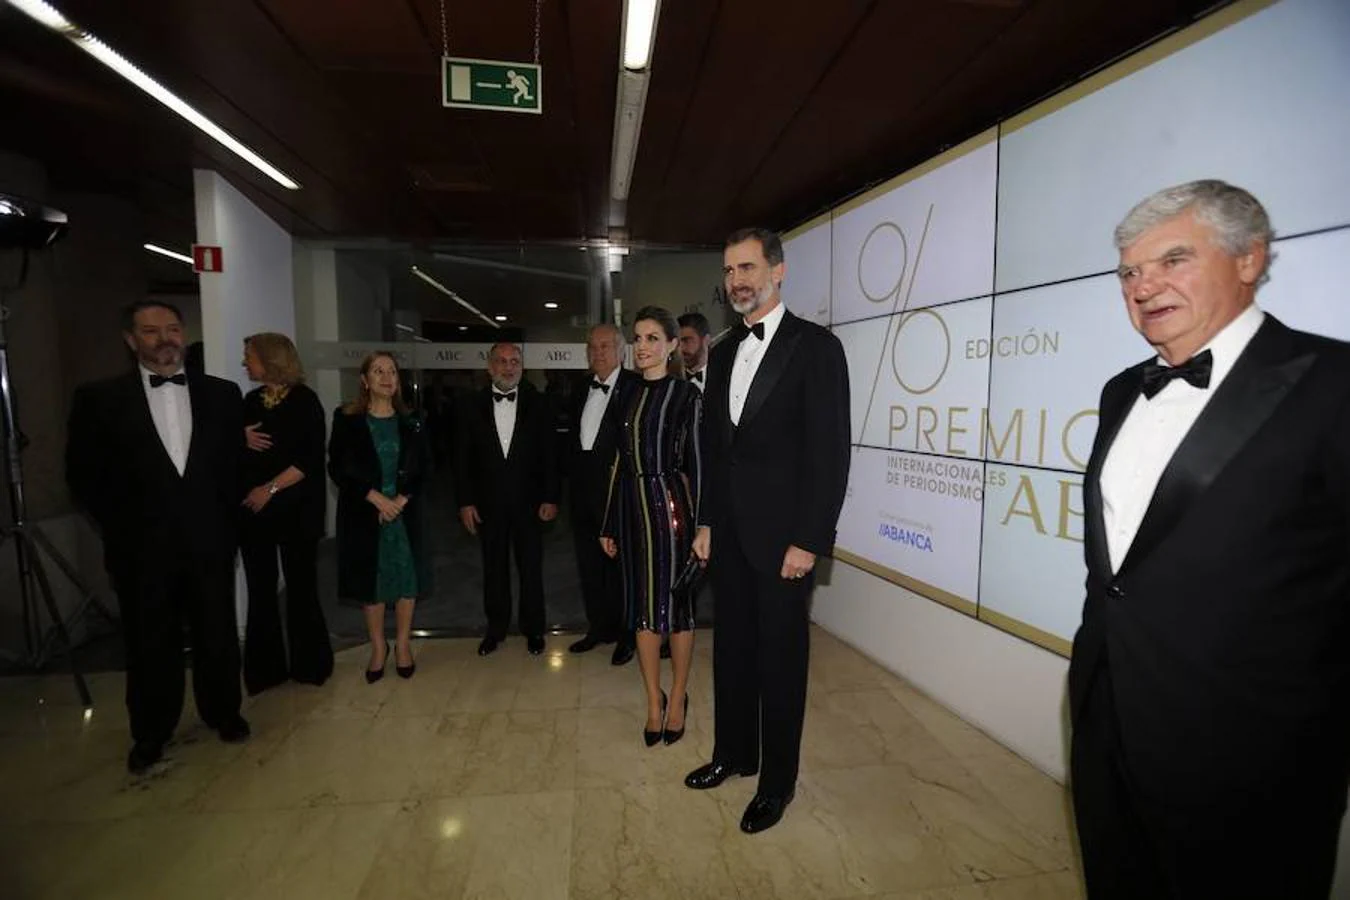 Los Reyes Don Felipe y Doña Letizia a su entrada en la Casa de ABC para la entrega de los 96º Premios Internacionales de Periodismo Mariano de Cavia, Luca de Tena y Mingote 